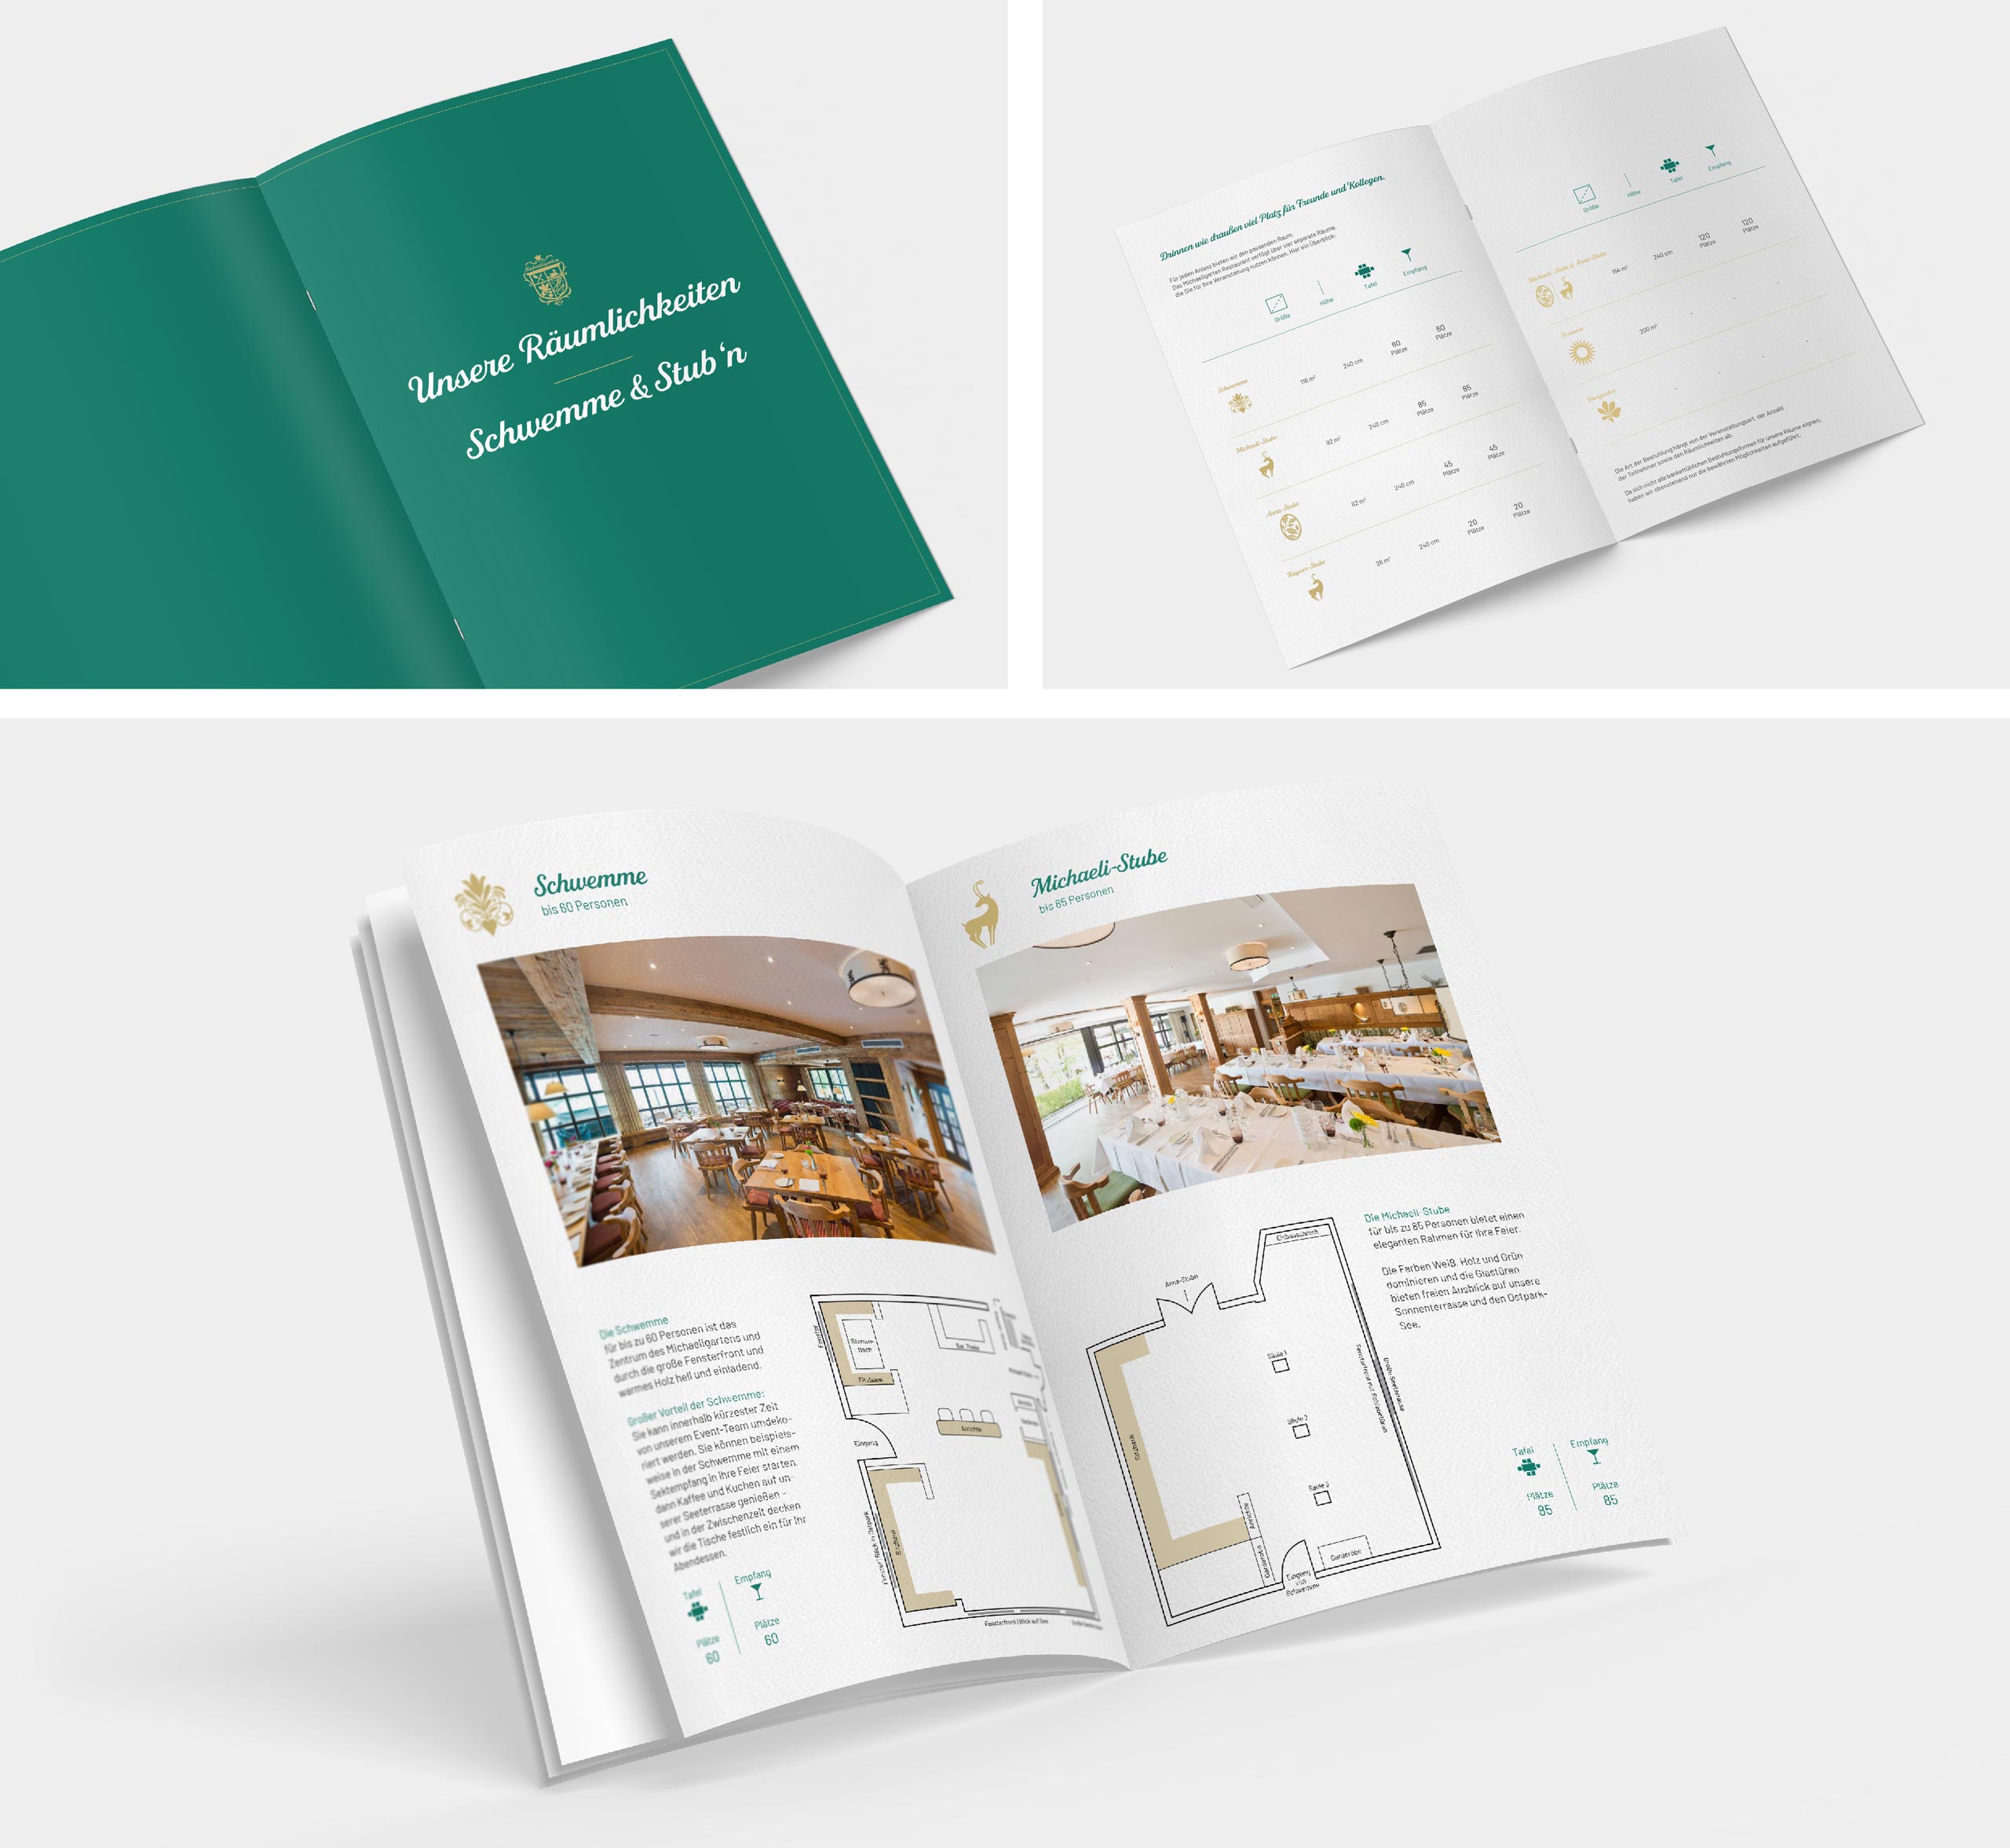 Collage verschiedener Infoseiten der Bankettmappe für die Gastronomie Michaeligarten in München.